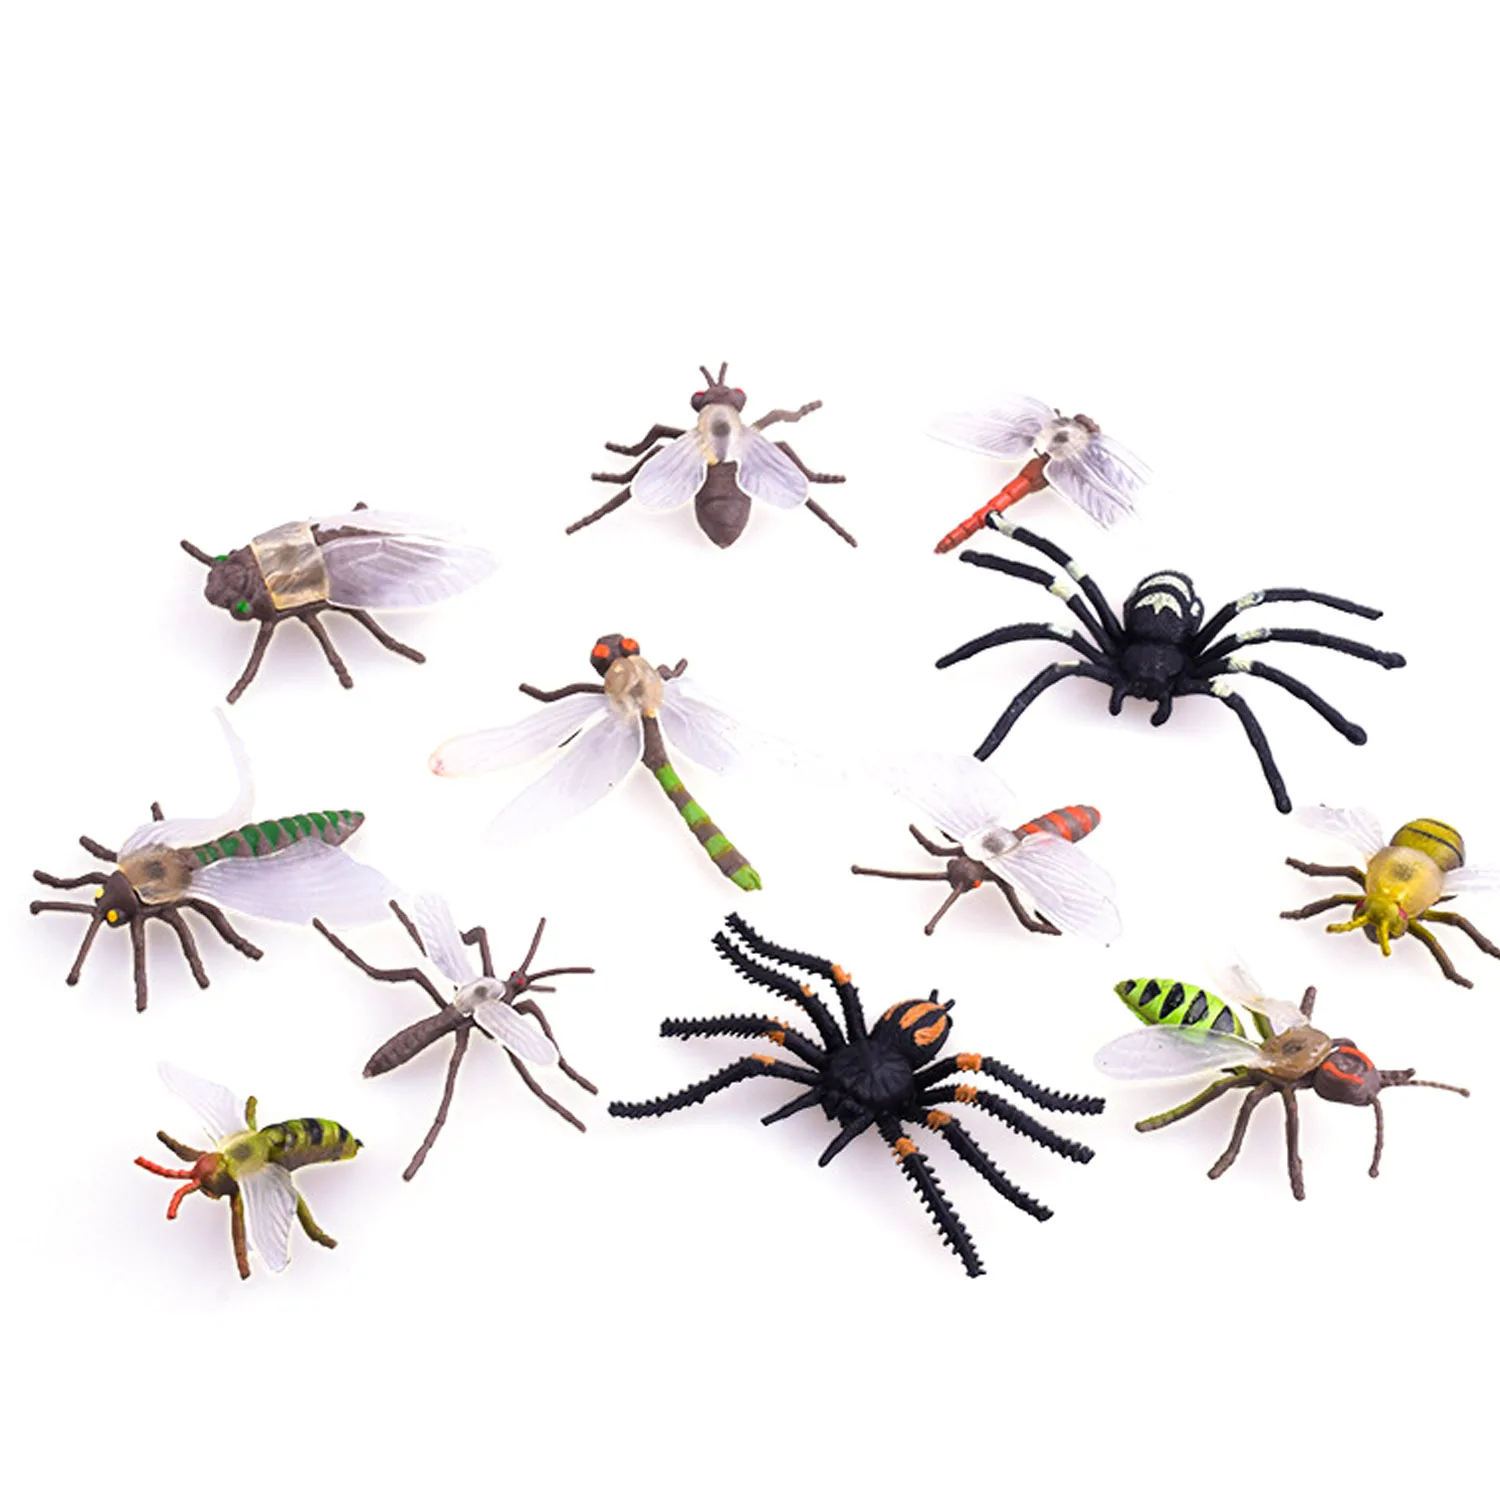 12 шт. Моделирование Пластиковые ПВХ Мини насекомых животных модели паук таракан Жук Кузнечик Стрекоза муравей Mantis обучающая игрушка